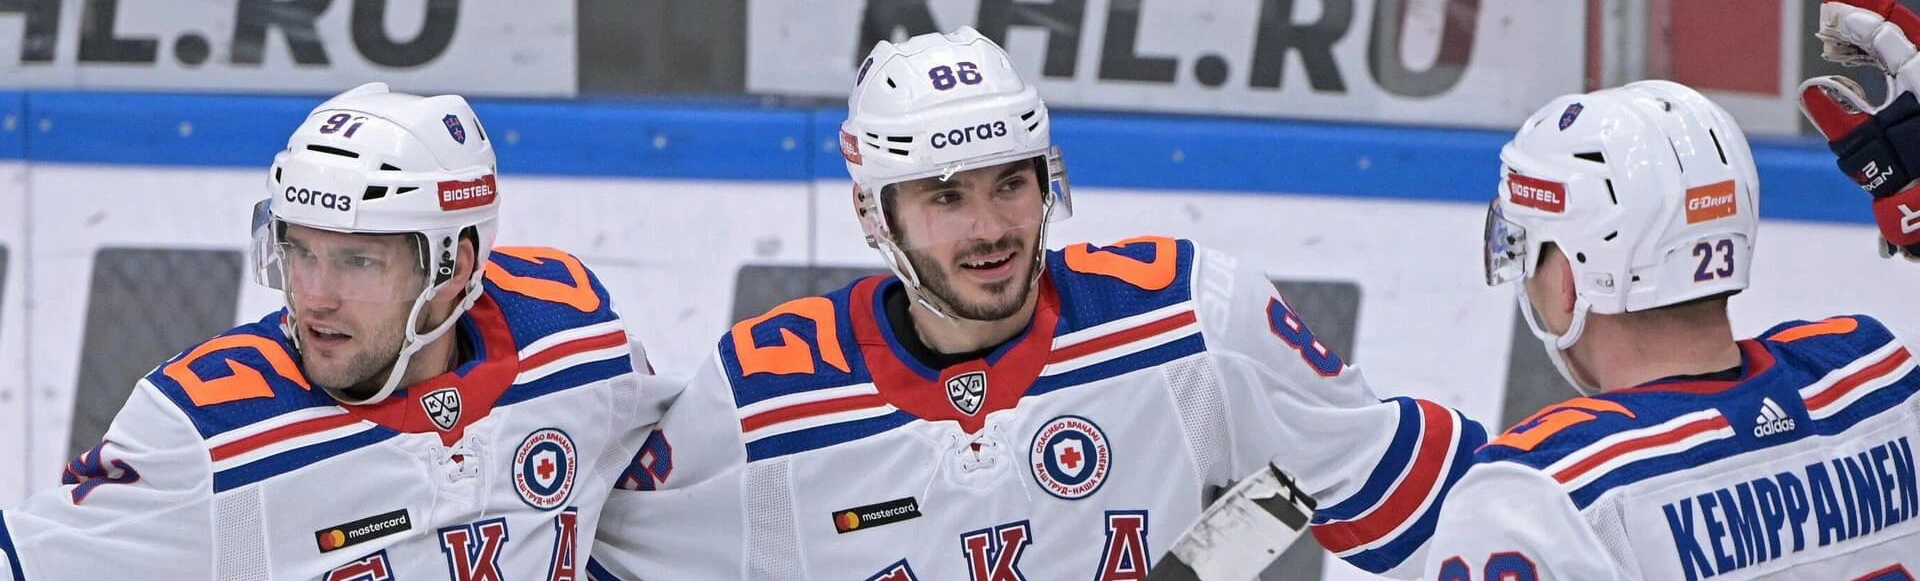 Захар Бардаков и Никита Комаров будут играть в СКА